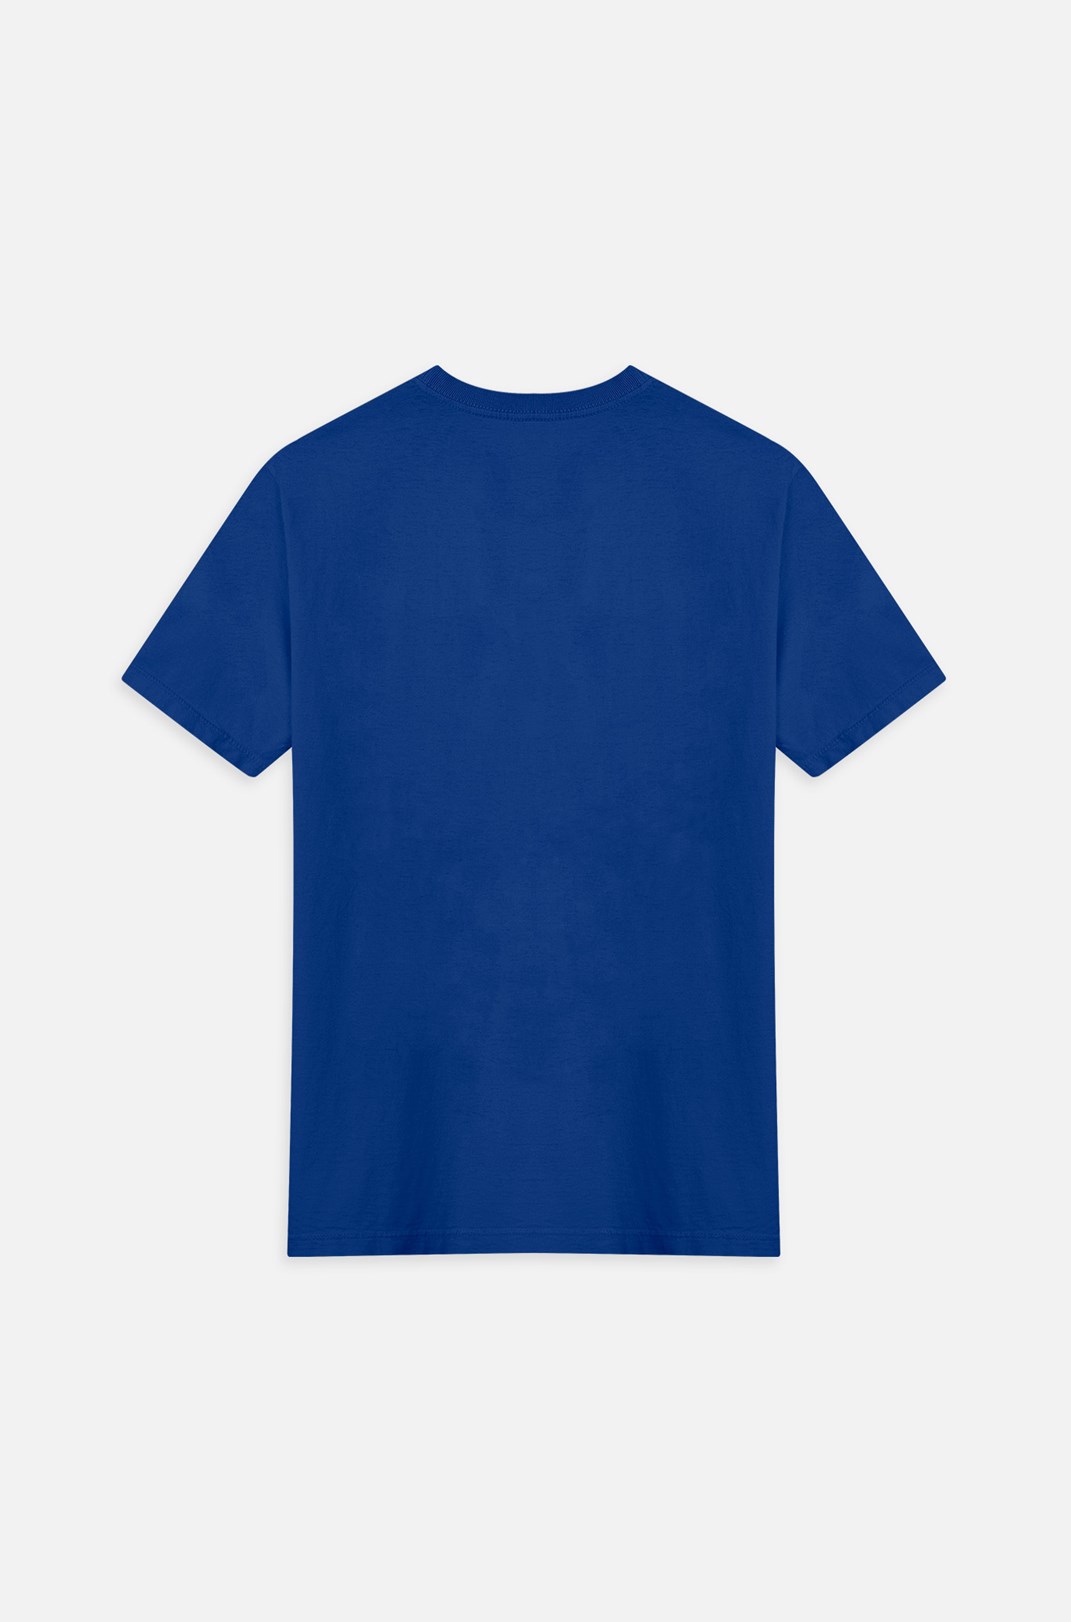 Camiseta Bold Approve Spare Azul E Branca